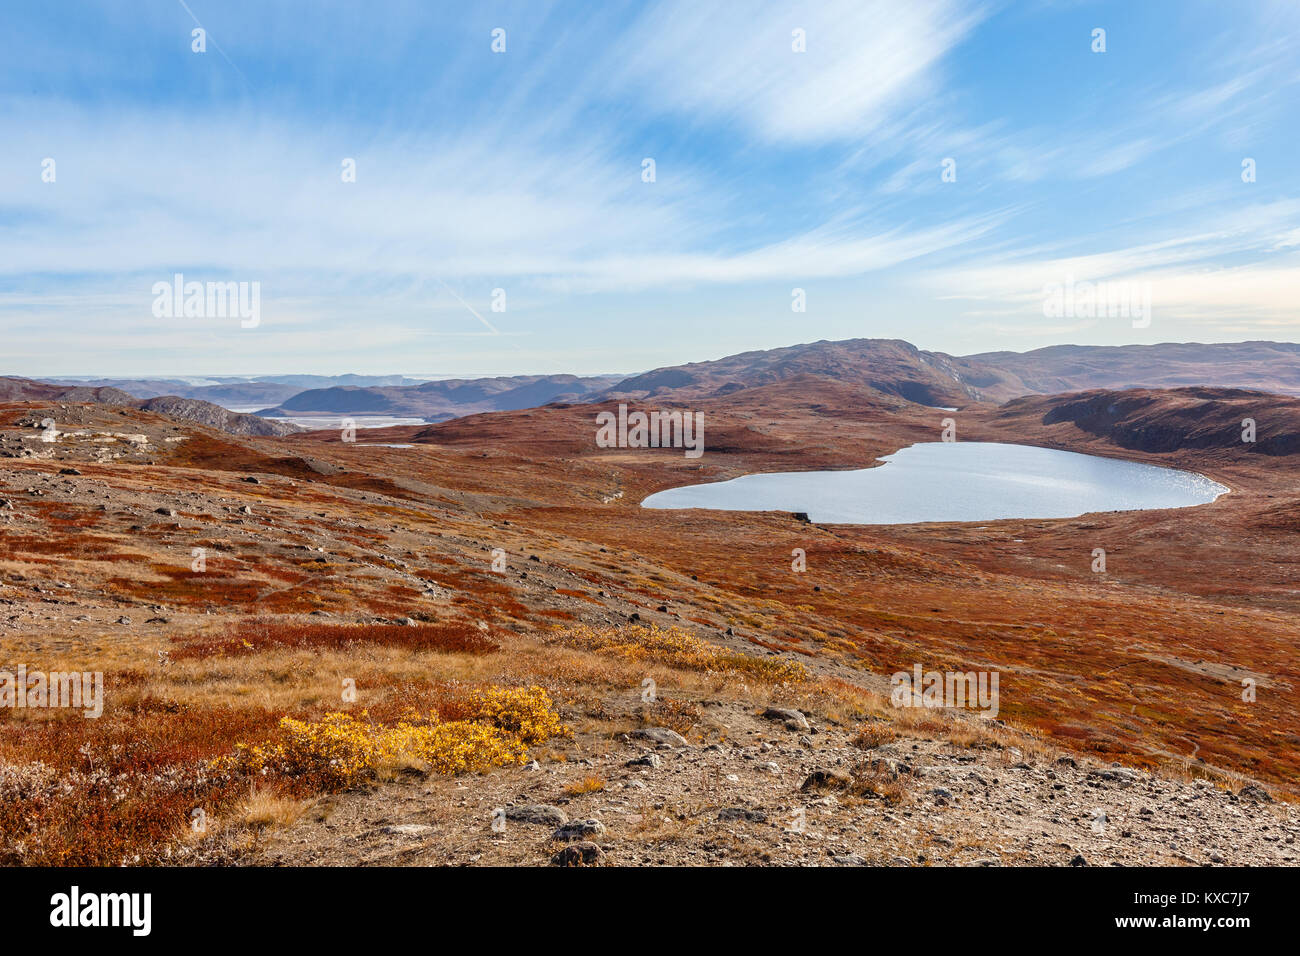 Otoño groenlandés yermos paisajes con lagos y montañas en el fondo, Kangerlussuaq, Groenlandia Foto de stock